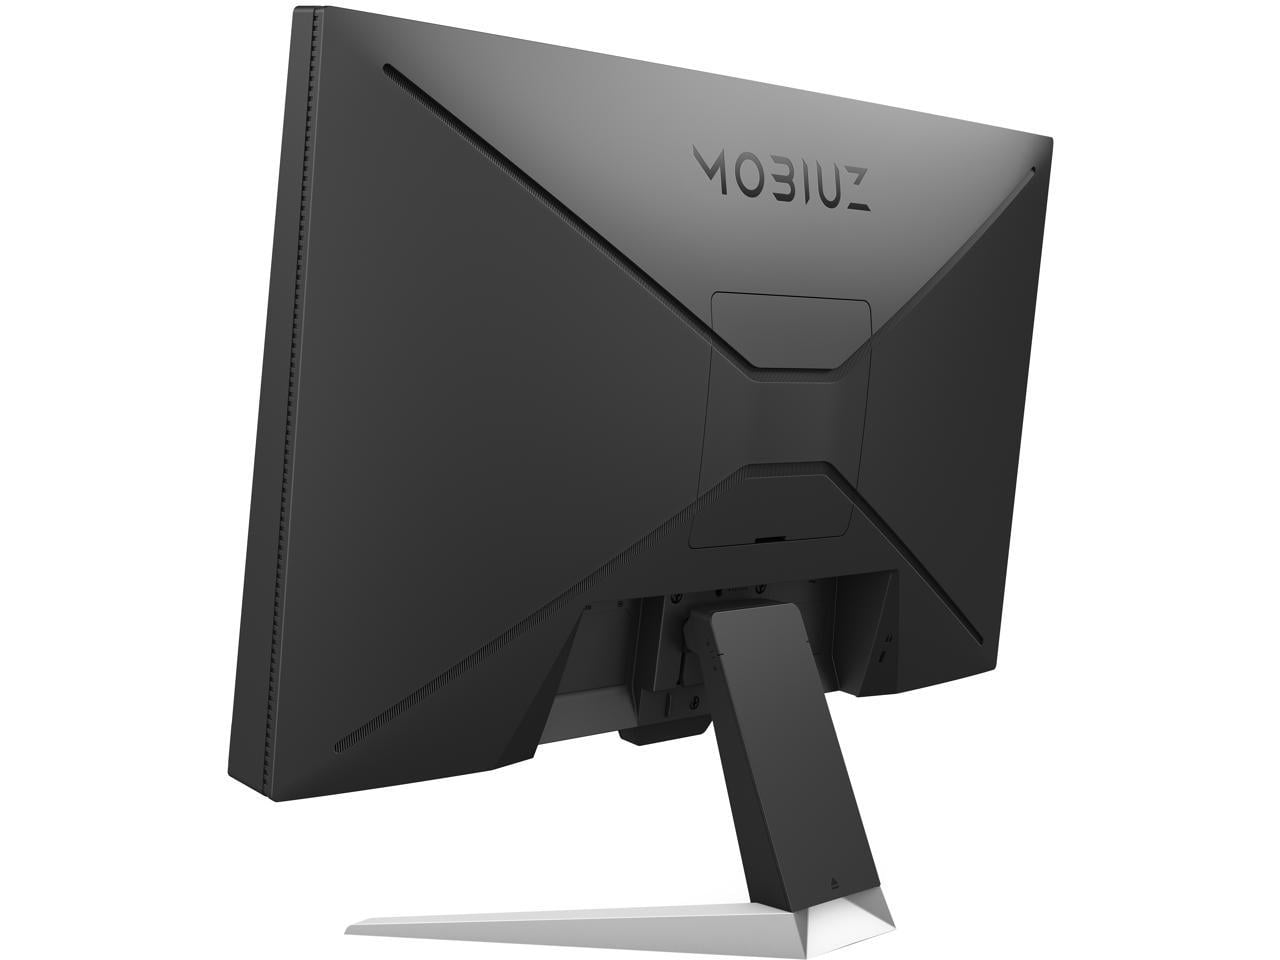 L'écran PC gaming BenQ Mobiuz de 24 pouces (165 Hz, 1ms) est en promotion